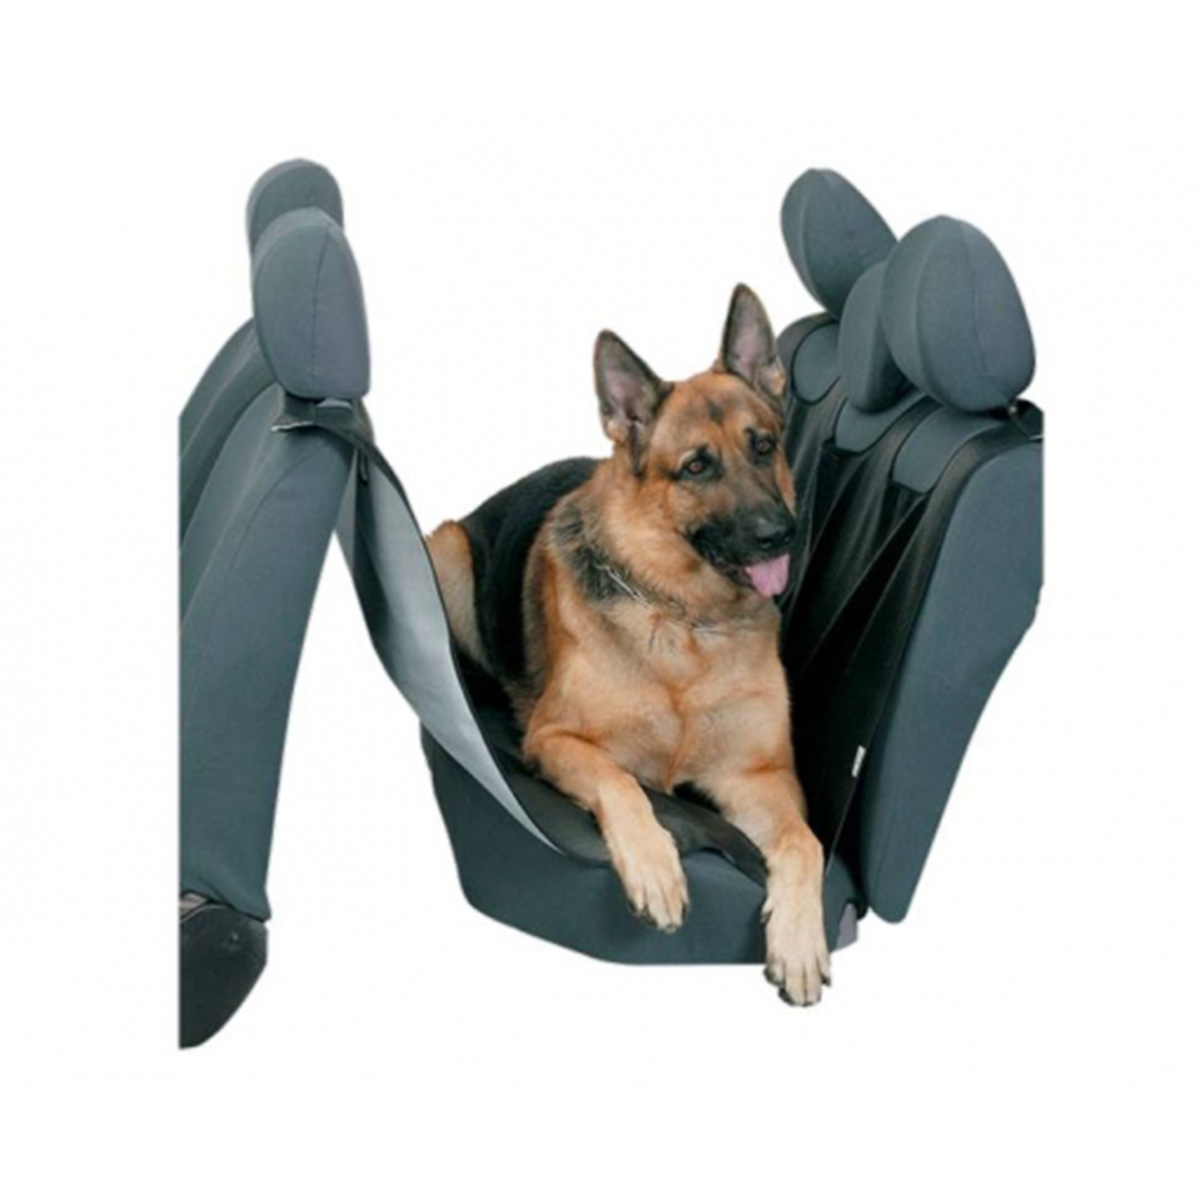 Protector asientos coche perro